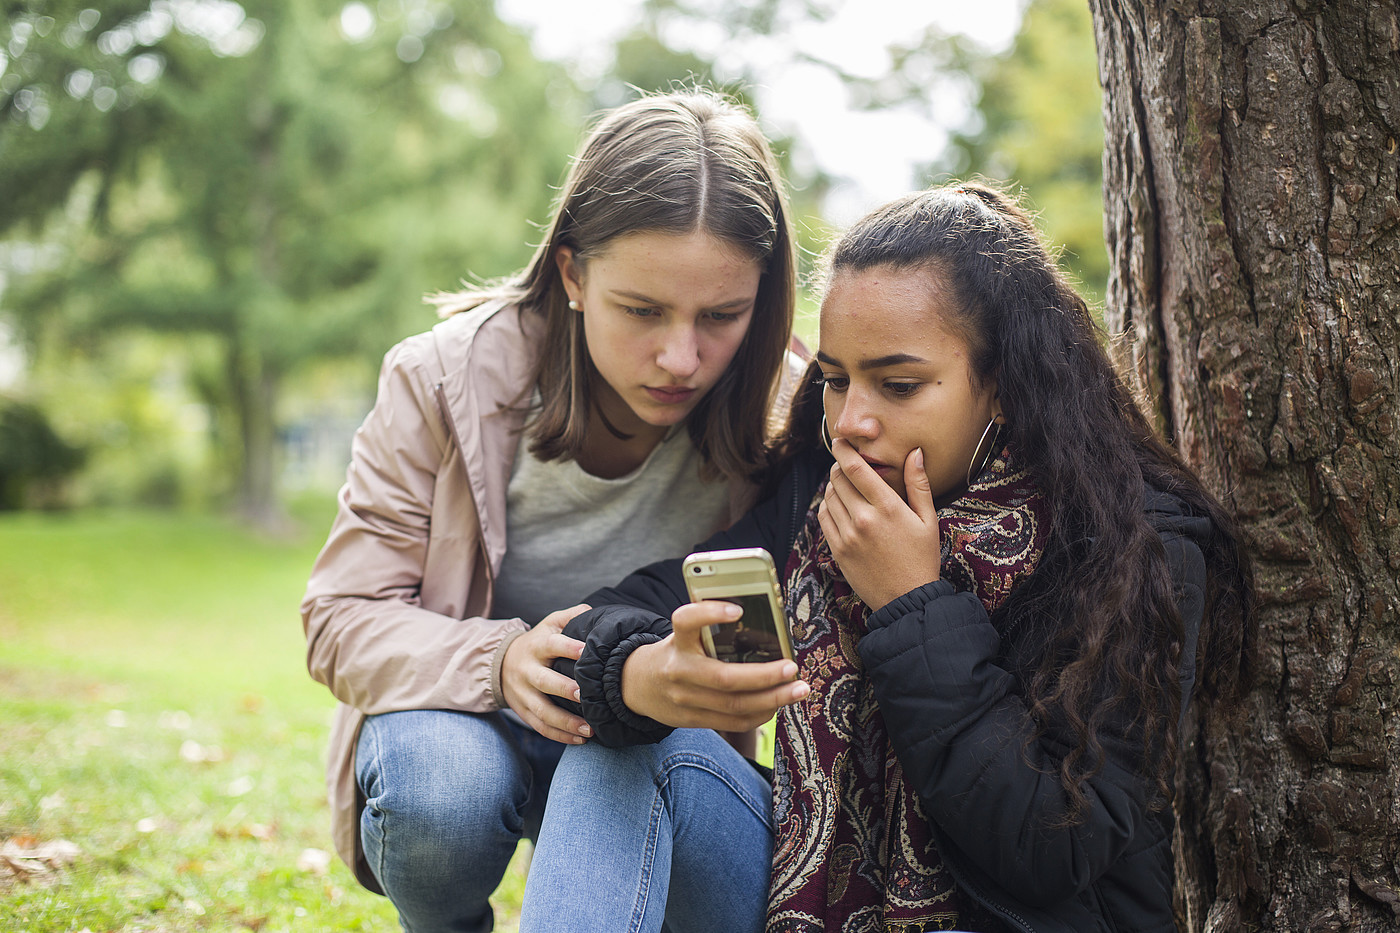 Zwei Jugendliche schauen draussen schockiert auf ein Handy.